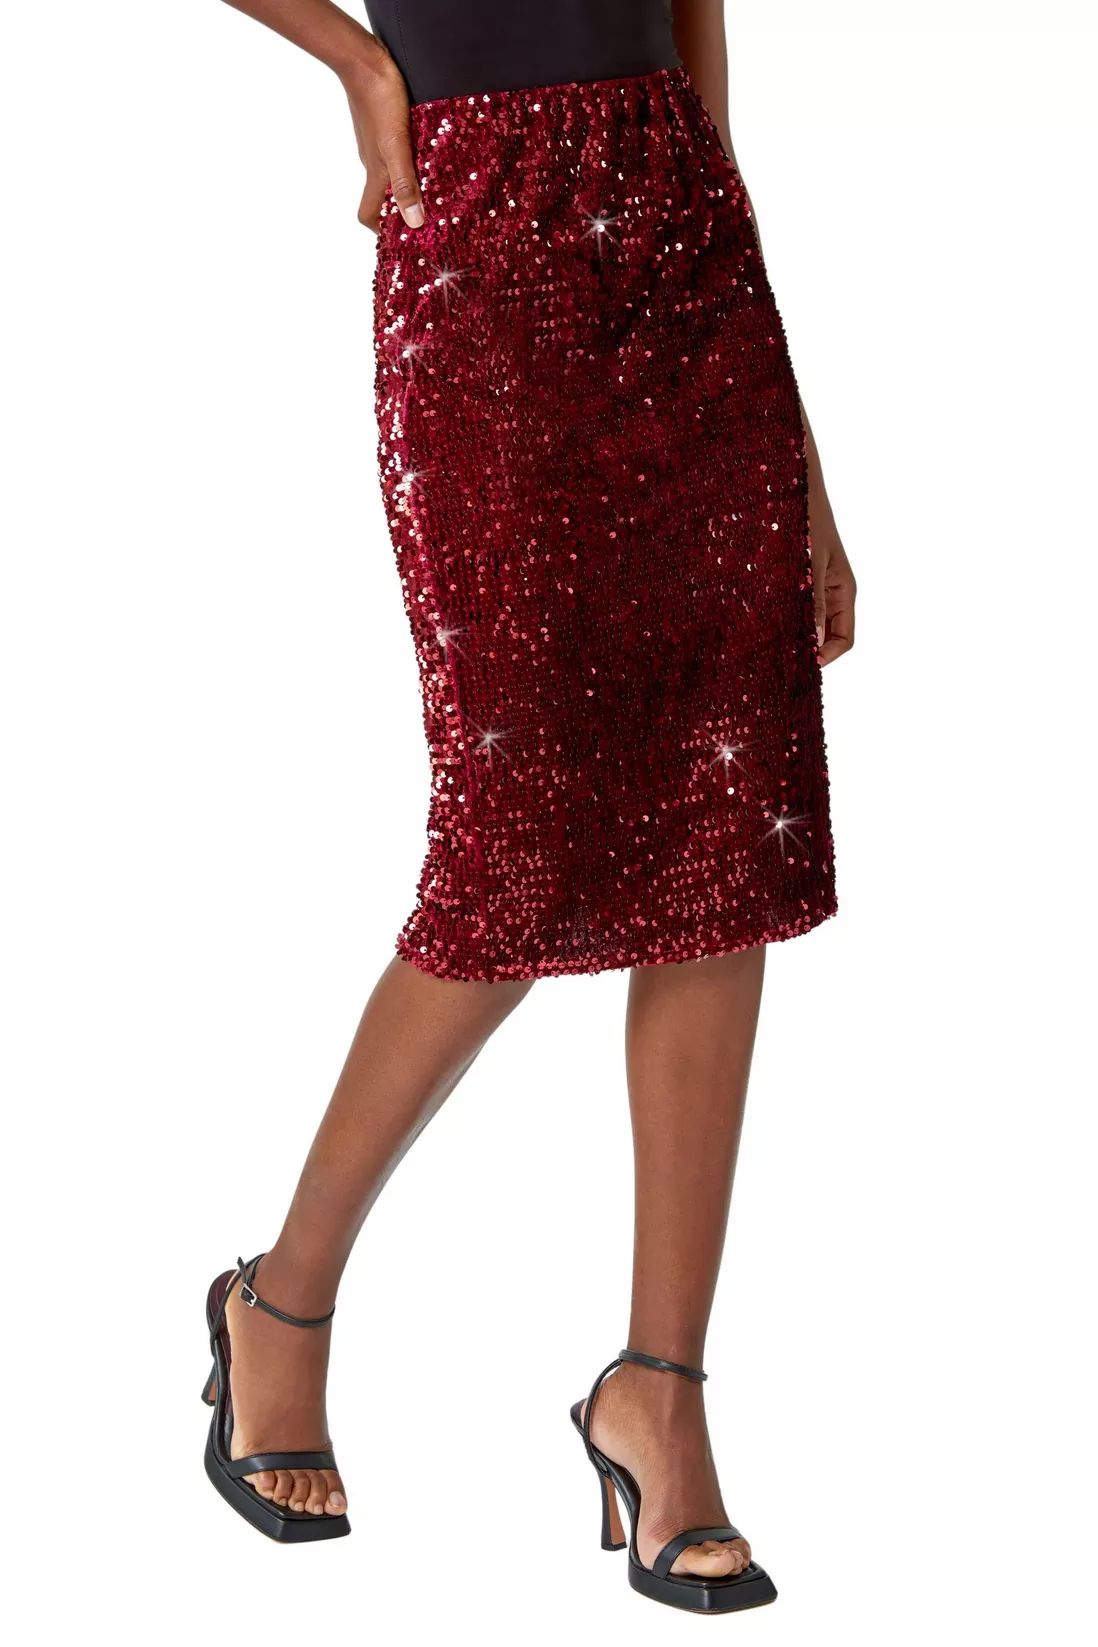 Skirts | Sequin Embellished Velour Stretch Skirt | Roman | Debenhams UK